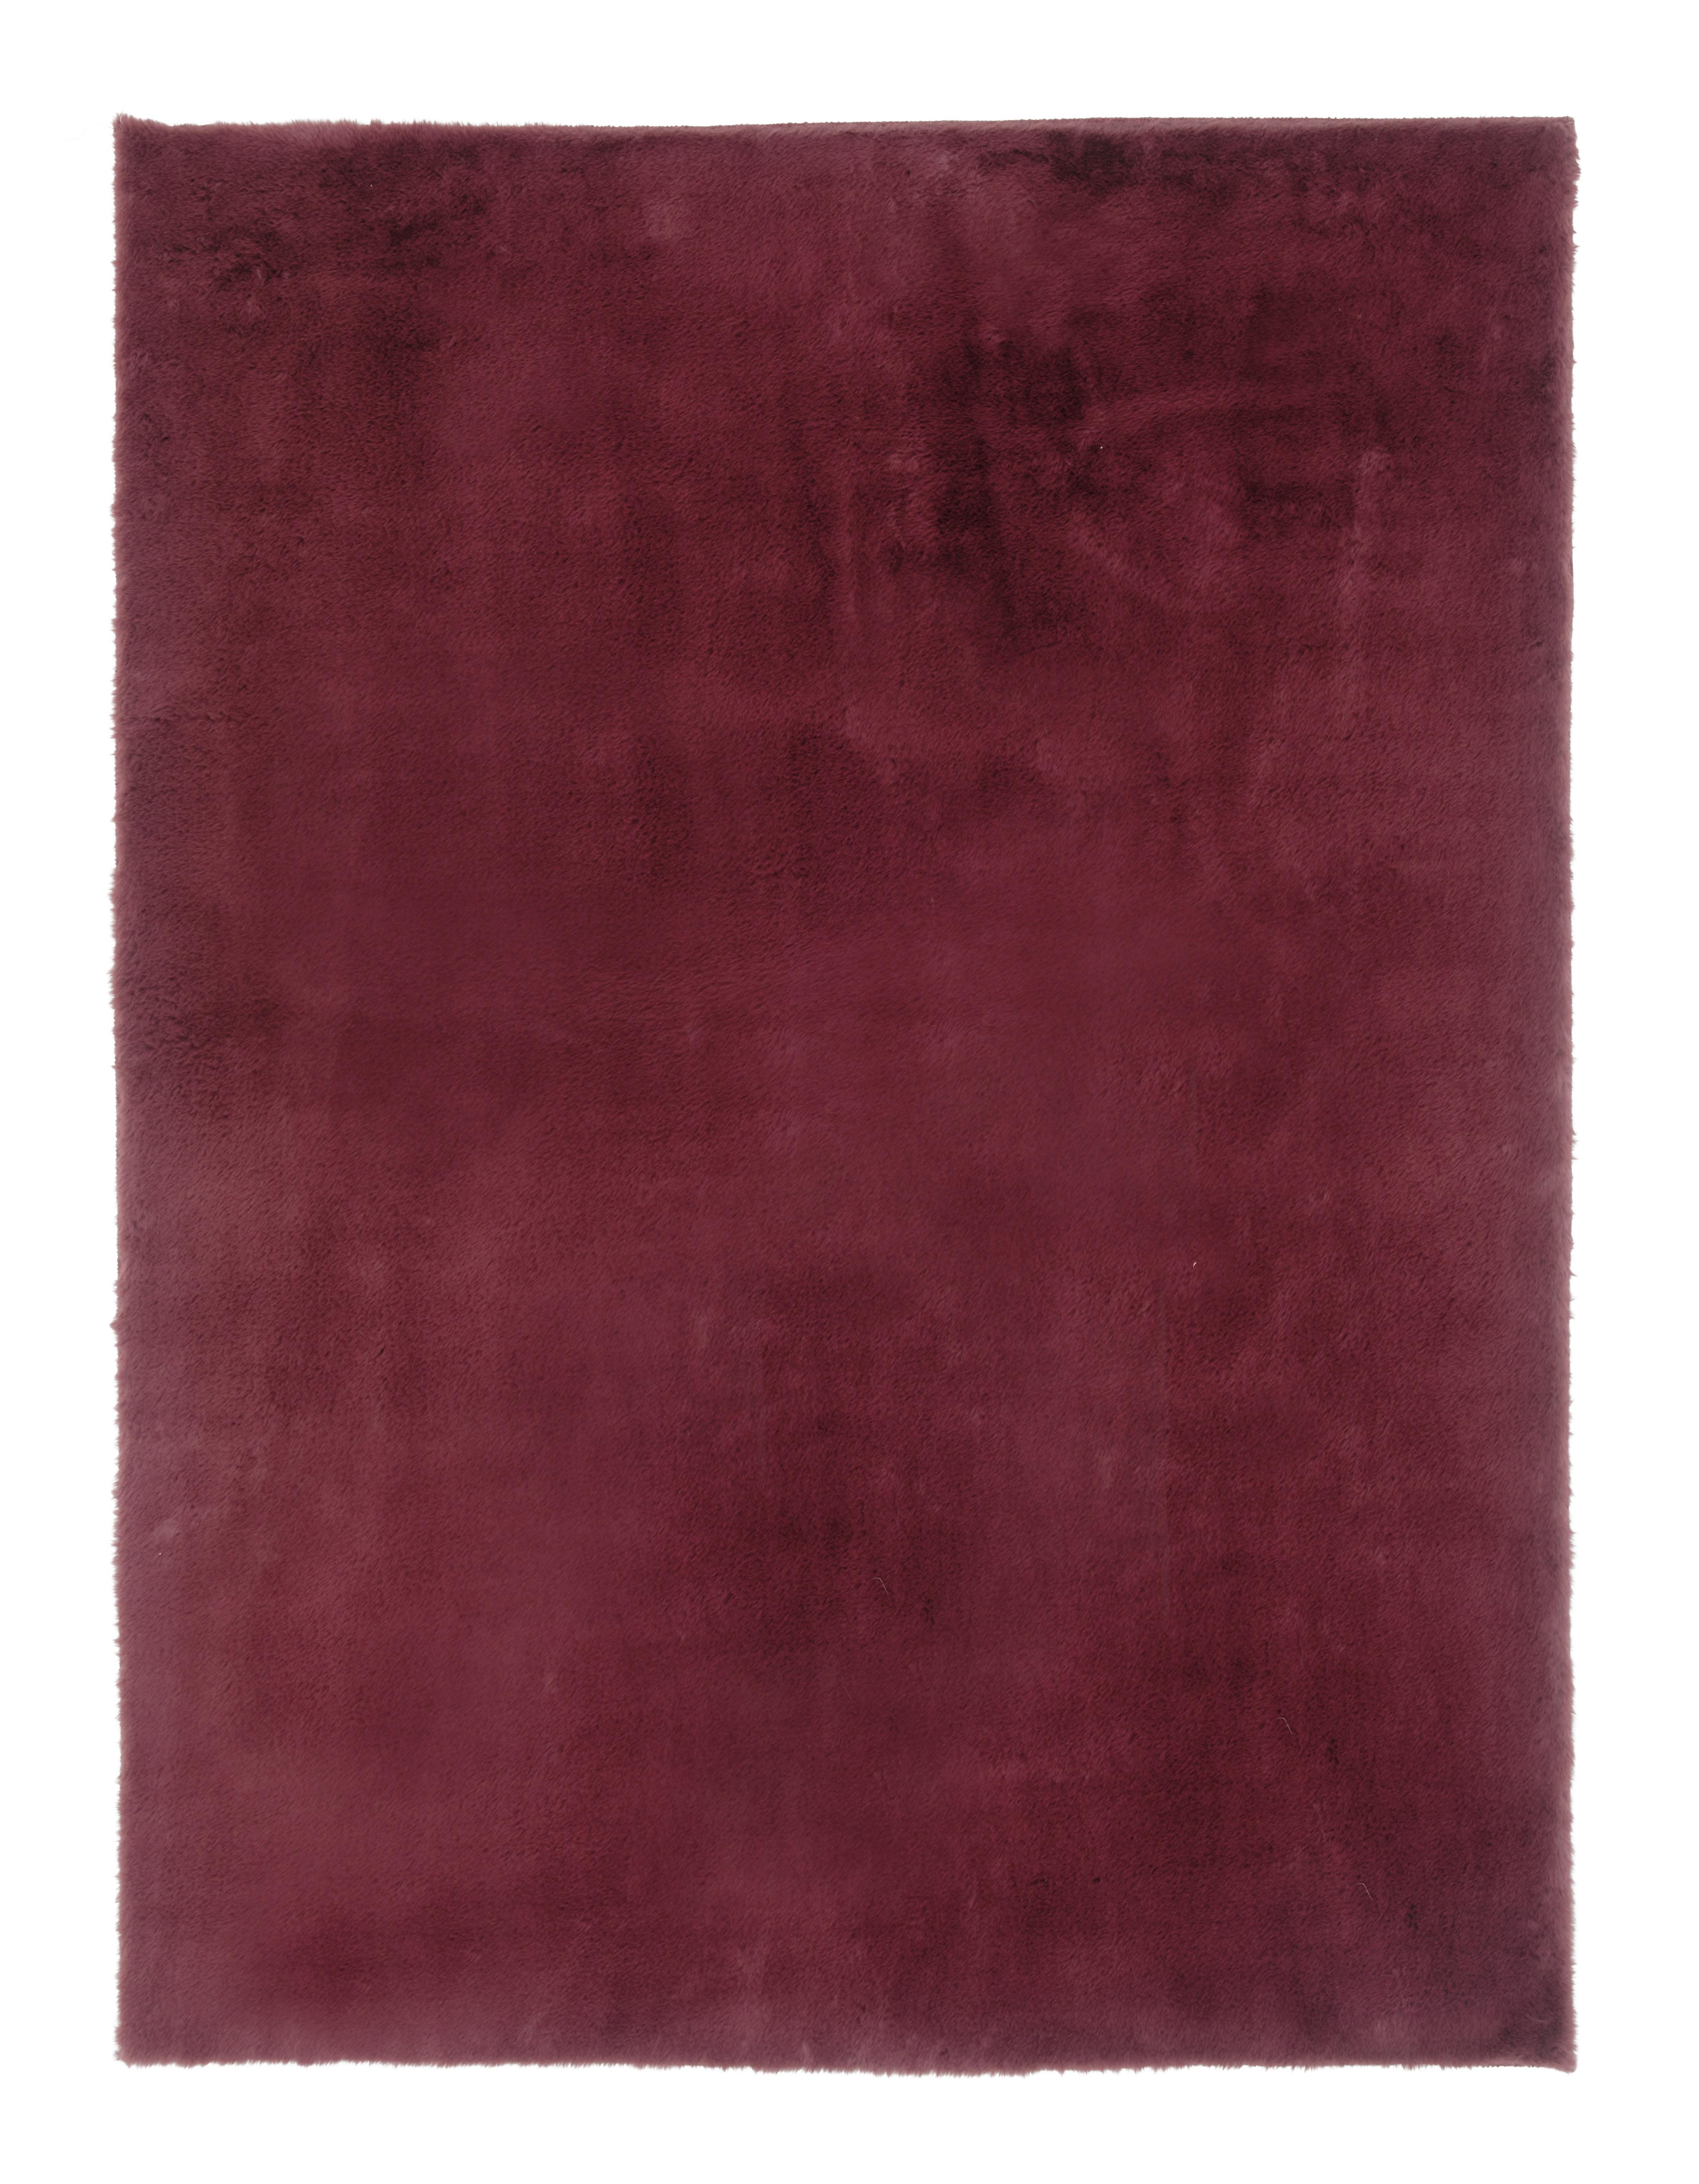 Umelá Kožušina Caroline 3, 160/220cm - bobuľová, textil (160/220cm) - Modern Living